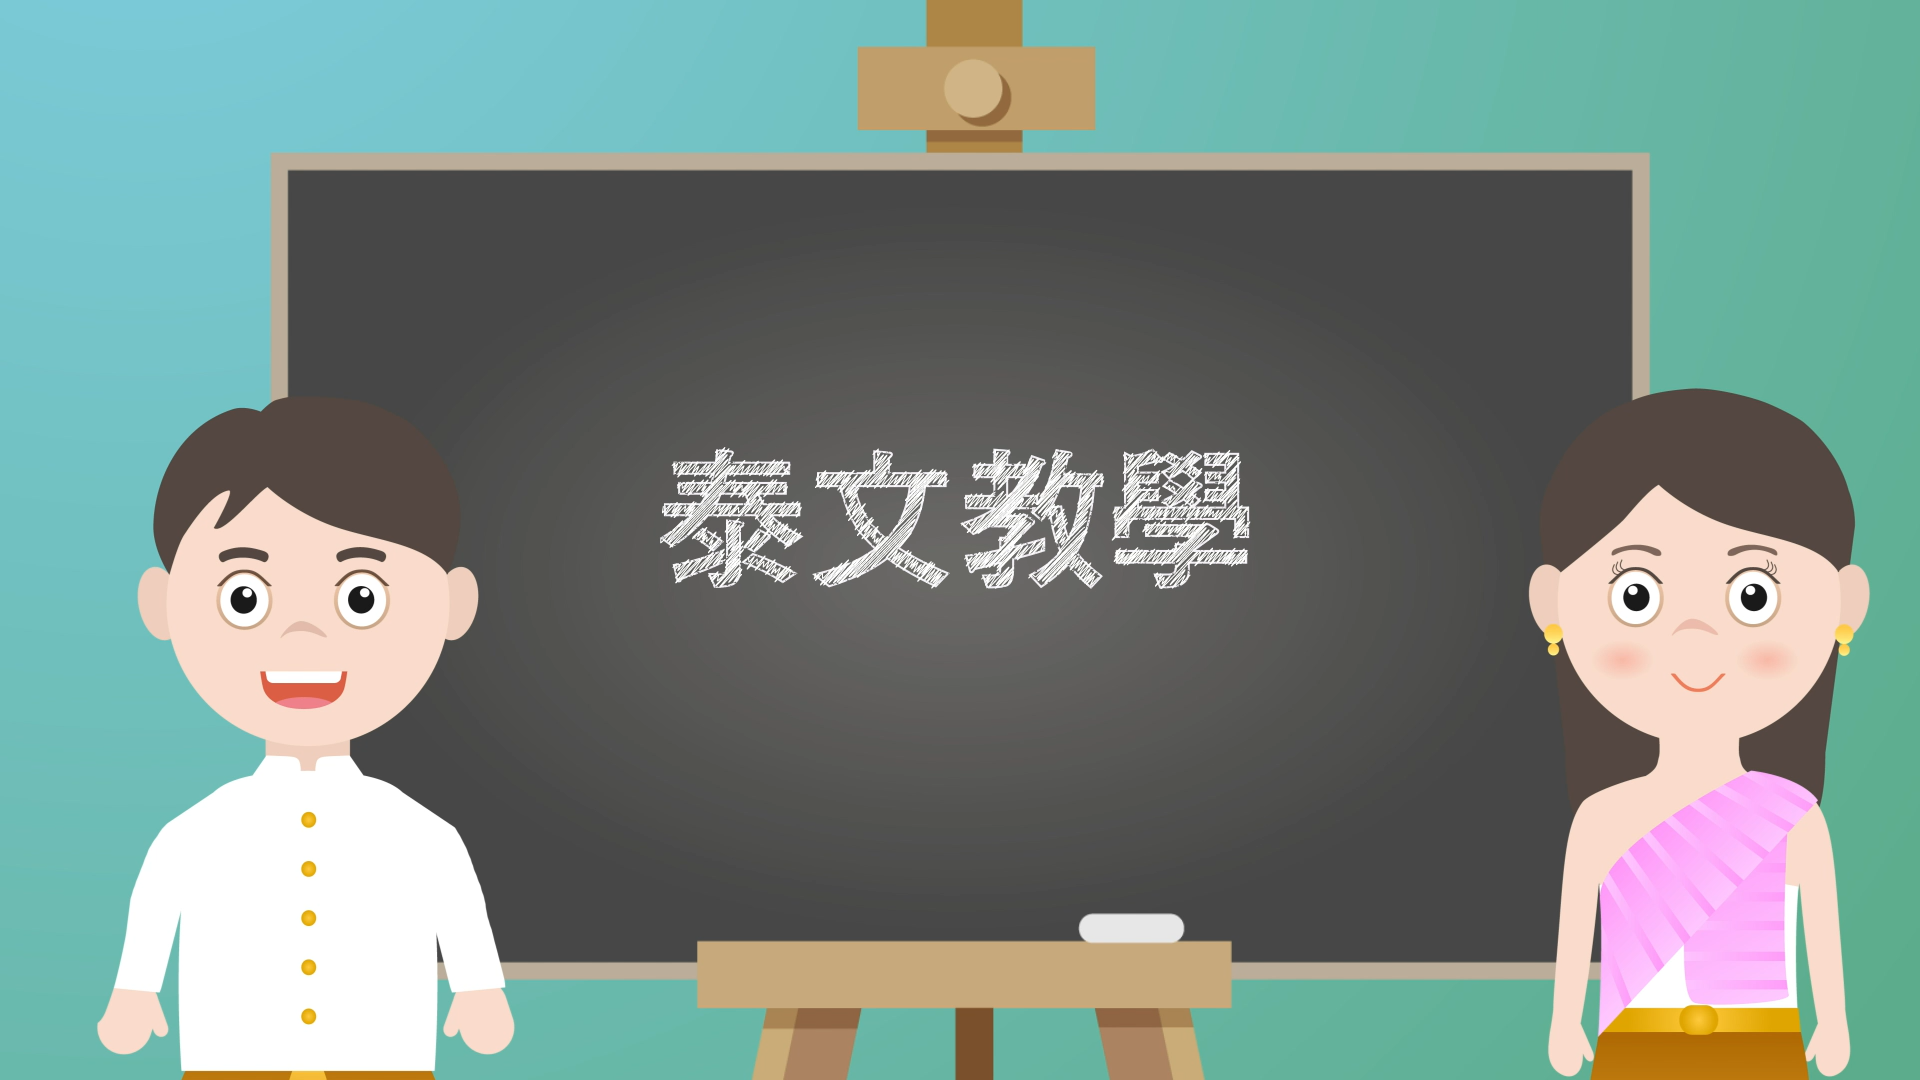 [ห้องเรียนภาษาต่างประเทศ] “ข้อห้ามในเทศกาลสาร์ทจีน” [20211121]